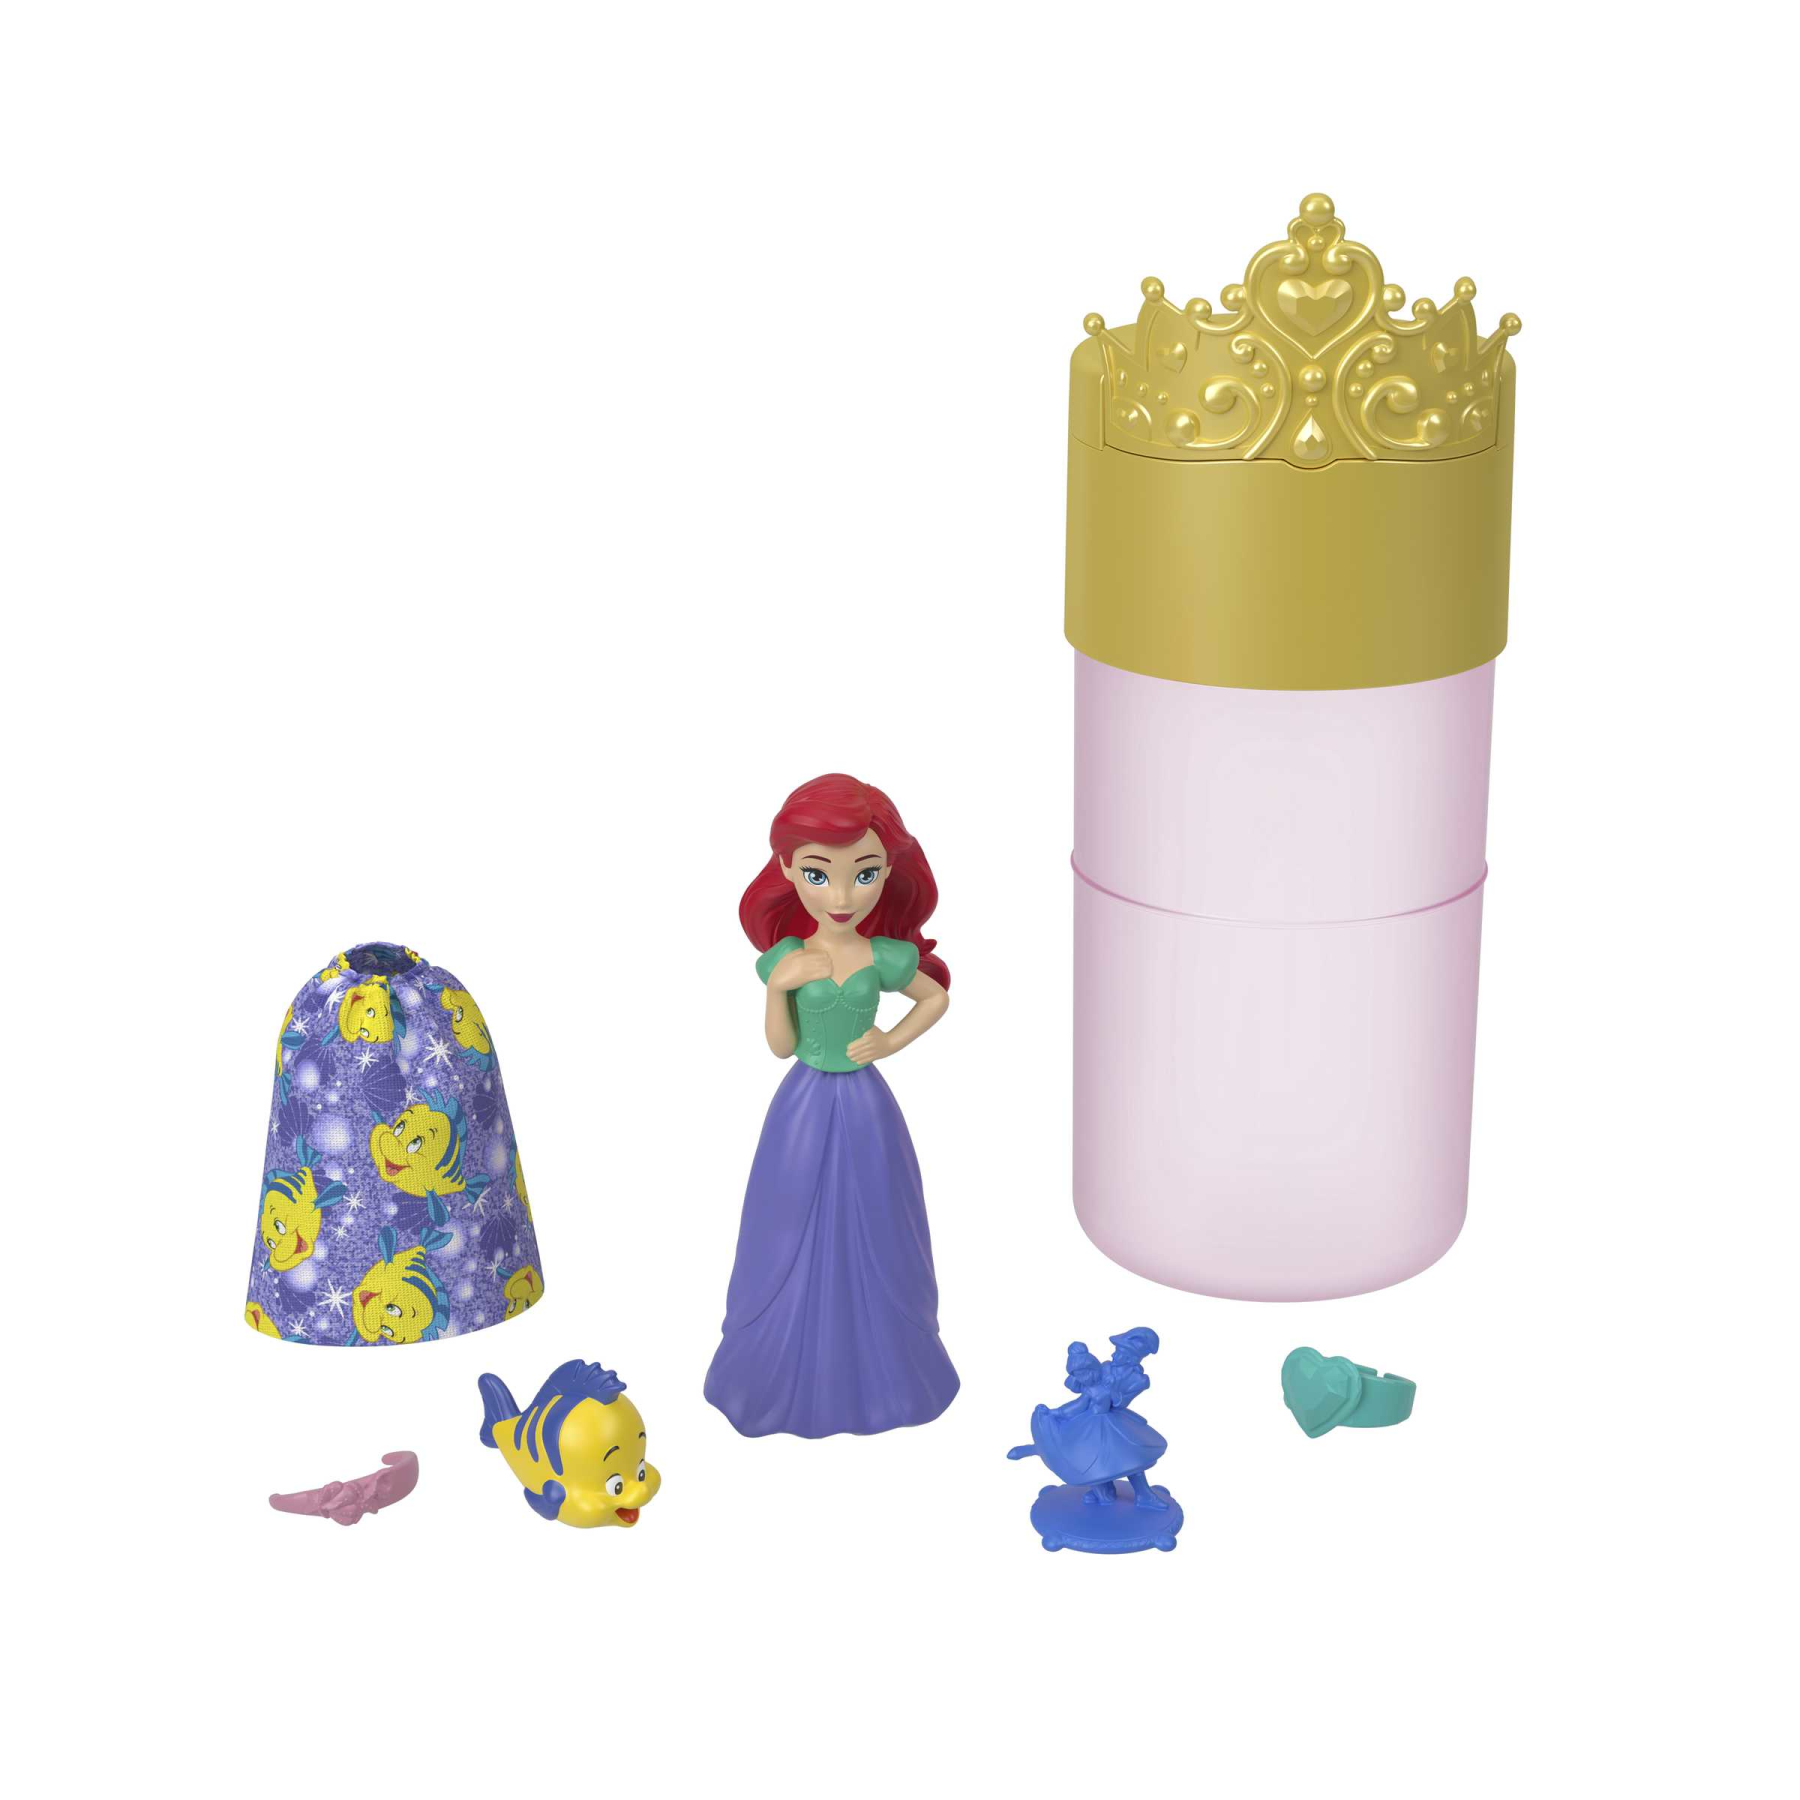 Disney princess - royal color reveal, bambola con 6 sorprese da scoprire tra cui un personaggio, ispirata ai film disney, giocattolo per bambini, 3+ anni, hmb69 - DISNEY PRINCESS